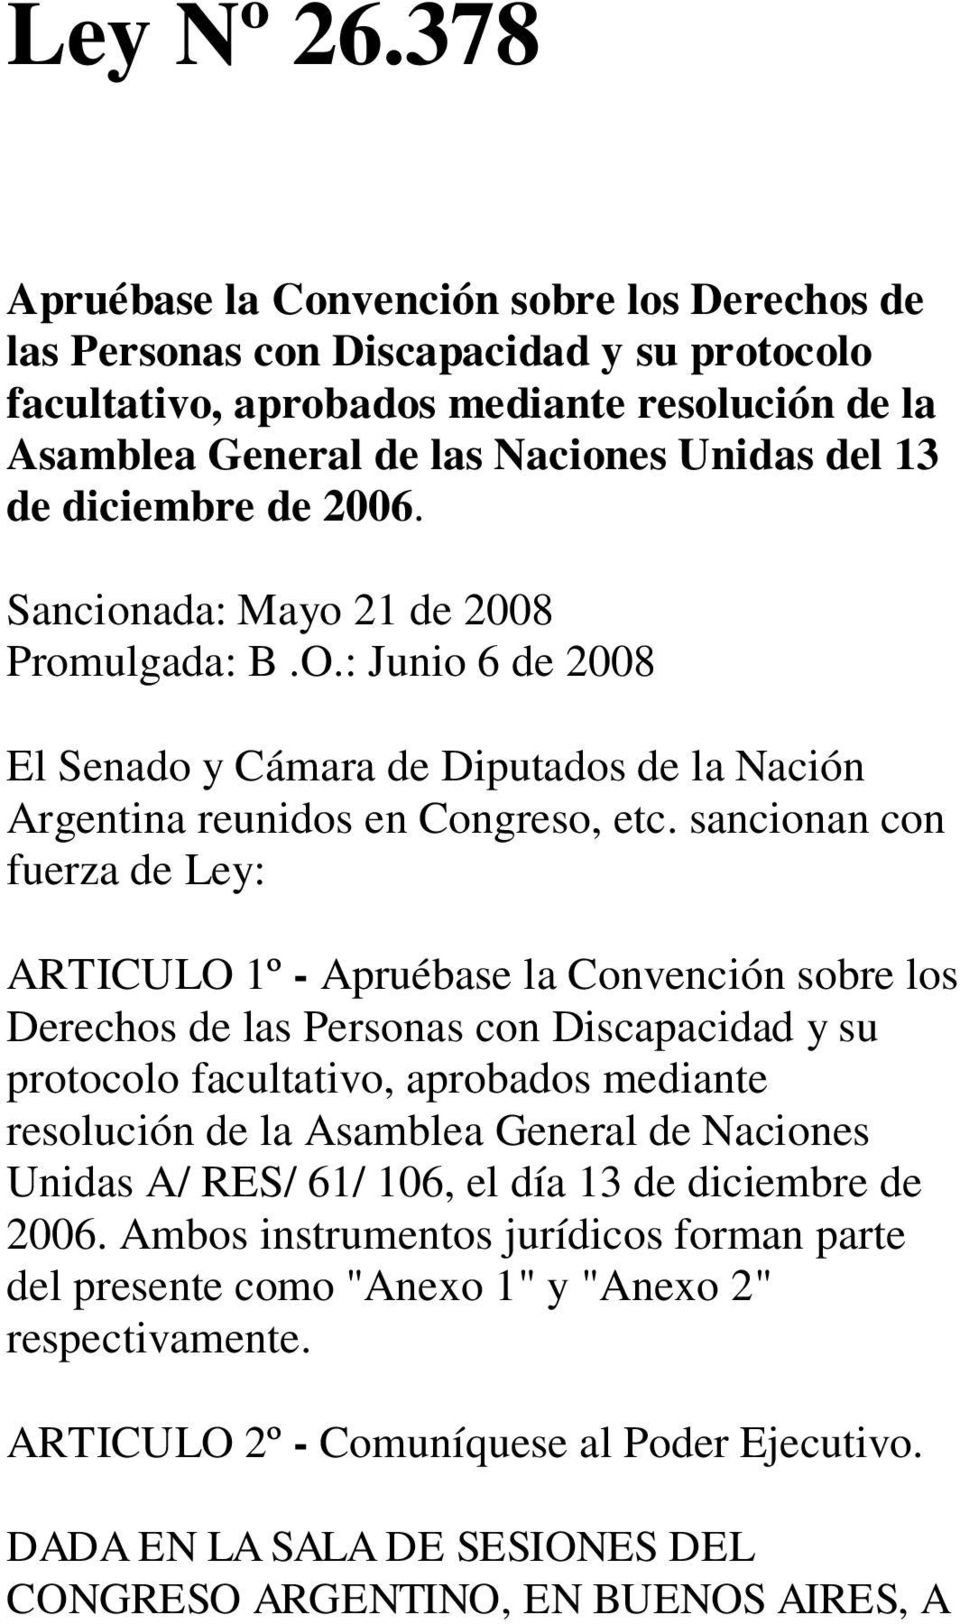 diciembre de 2006. Sancionada: Mayo 21 de 2008 Promulgada: B.O.: Junio 6 de 2008 El Senado y Cámara de Diputados de la Nación Argentina reunidos en Congreso, etc.